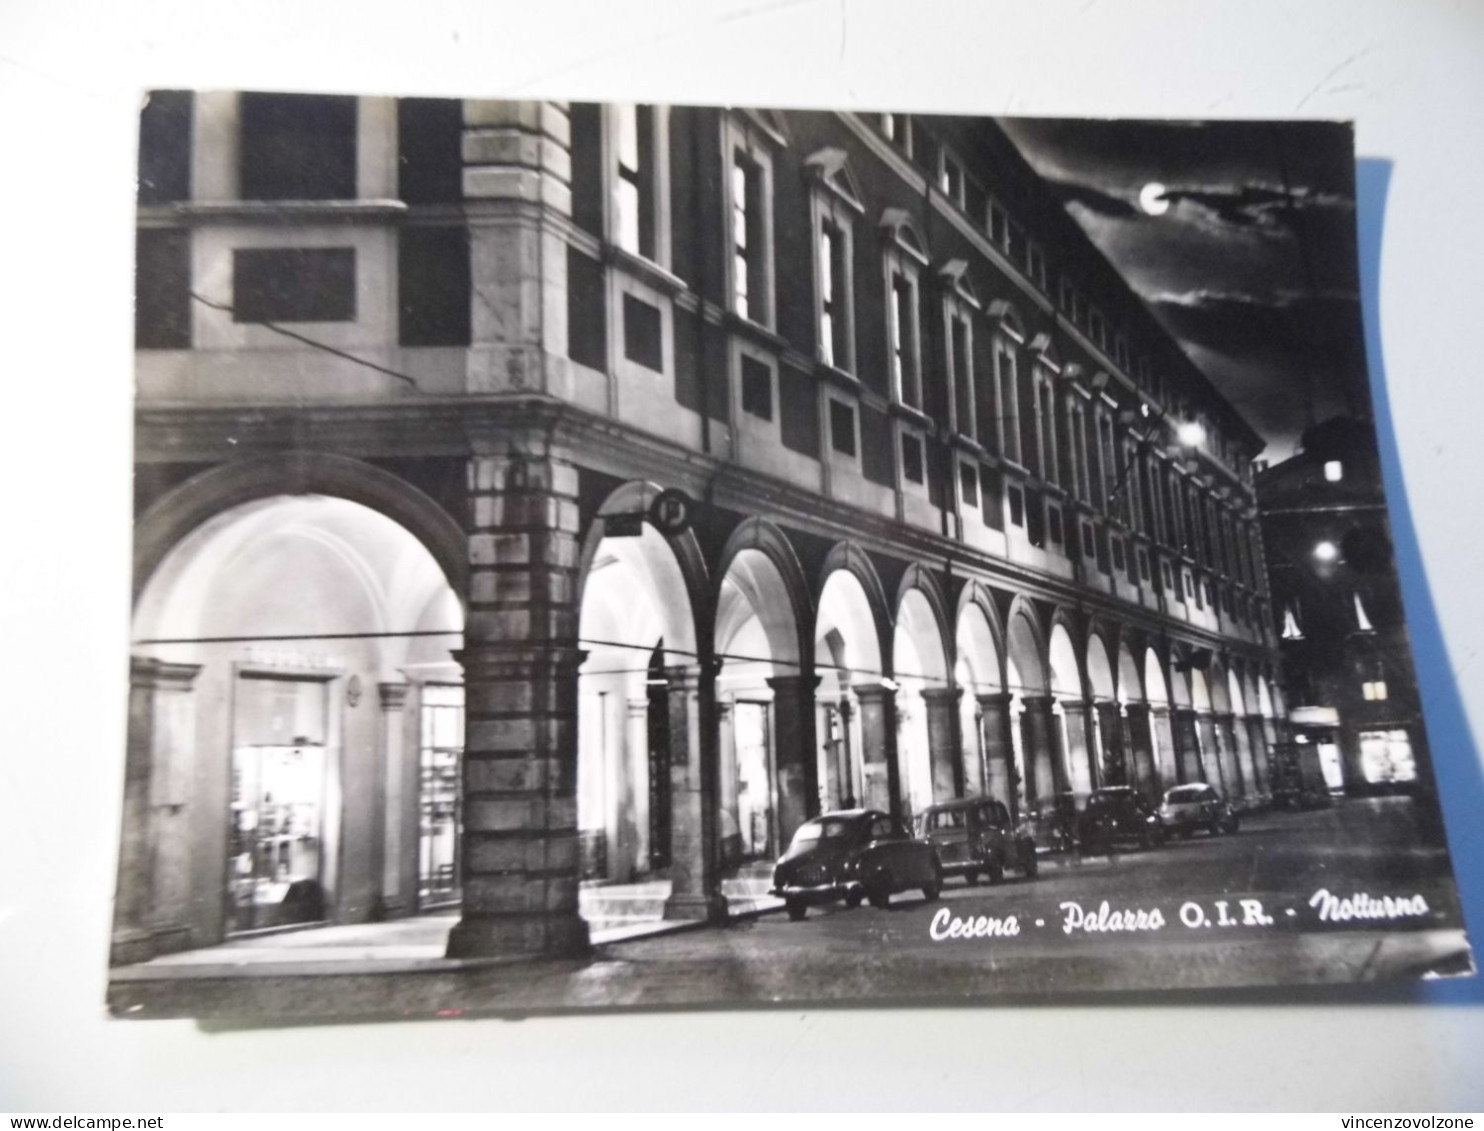 Cartolina Viaggiata "CESENA Palazzo O.I.R. Notturno" 1962 - Cesena